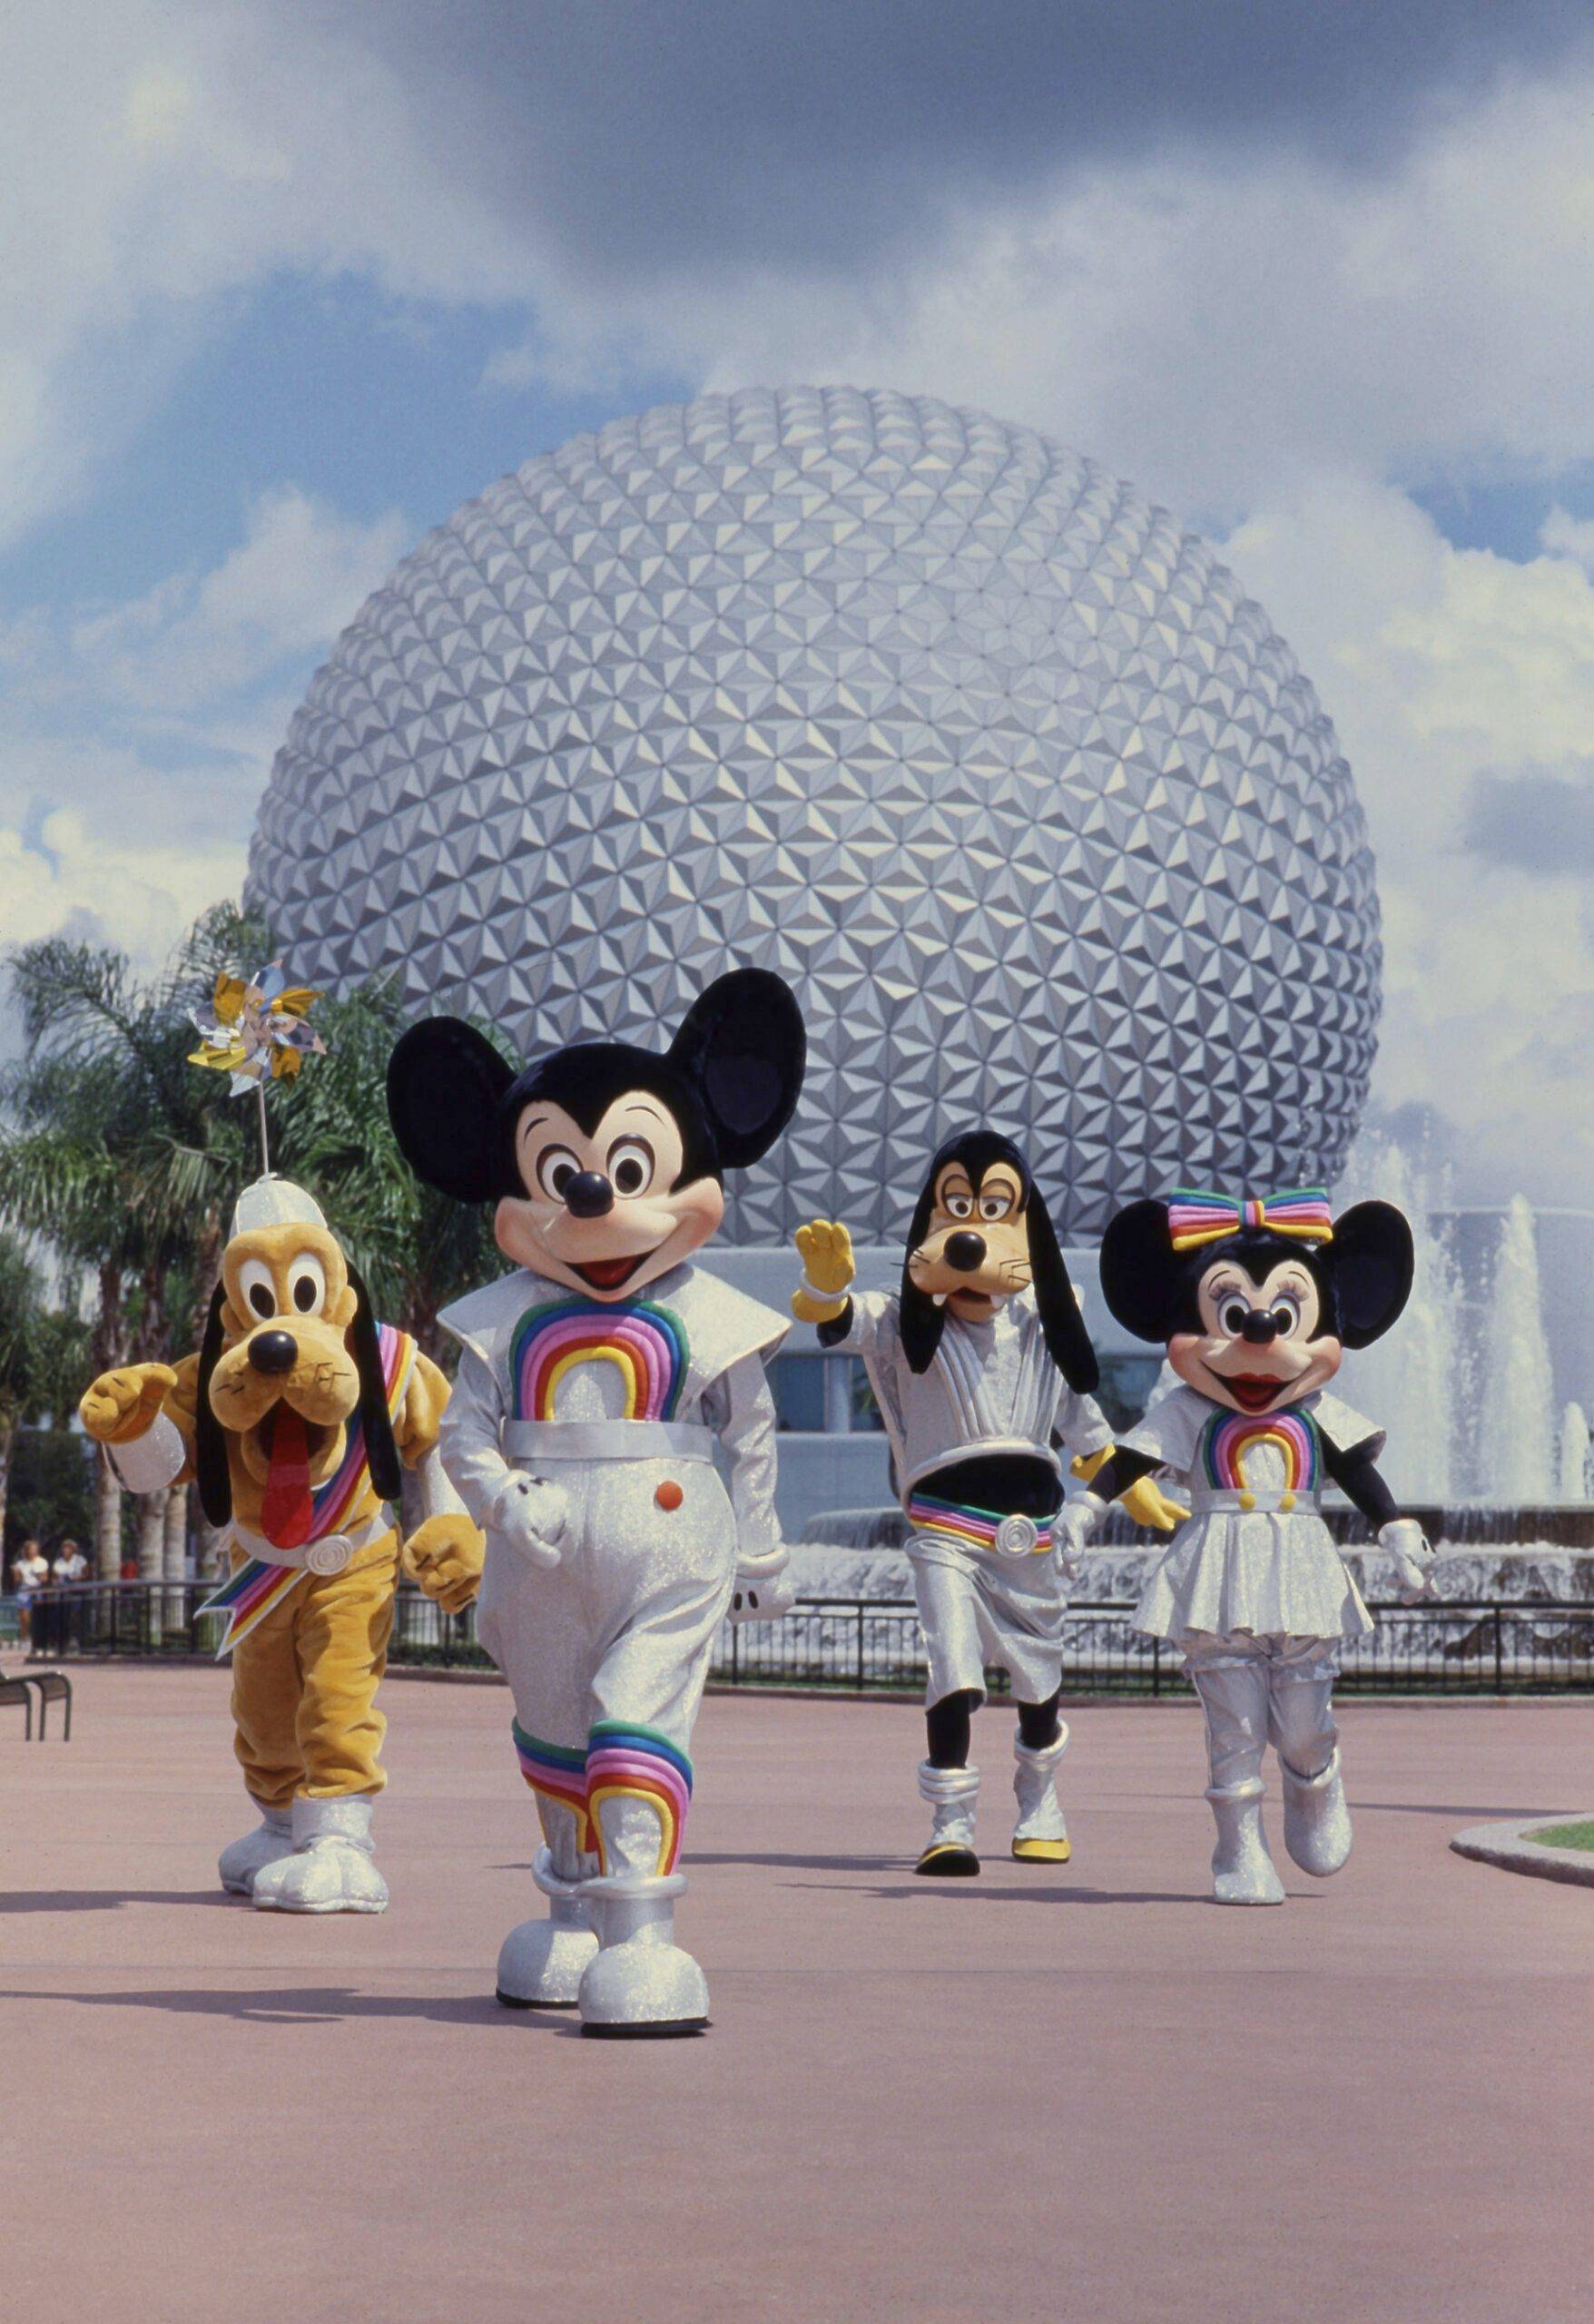 Mickey and pals at EPCOT in 1989 at Walt Disney World Resort